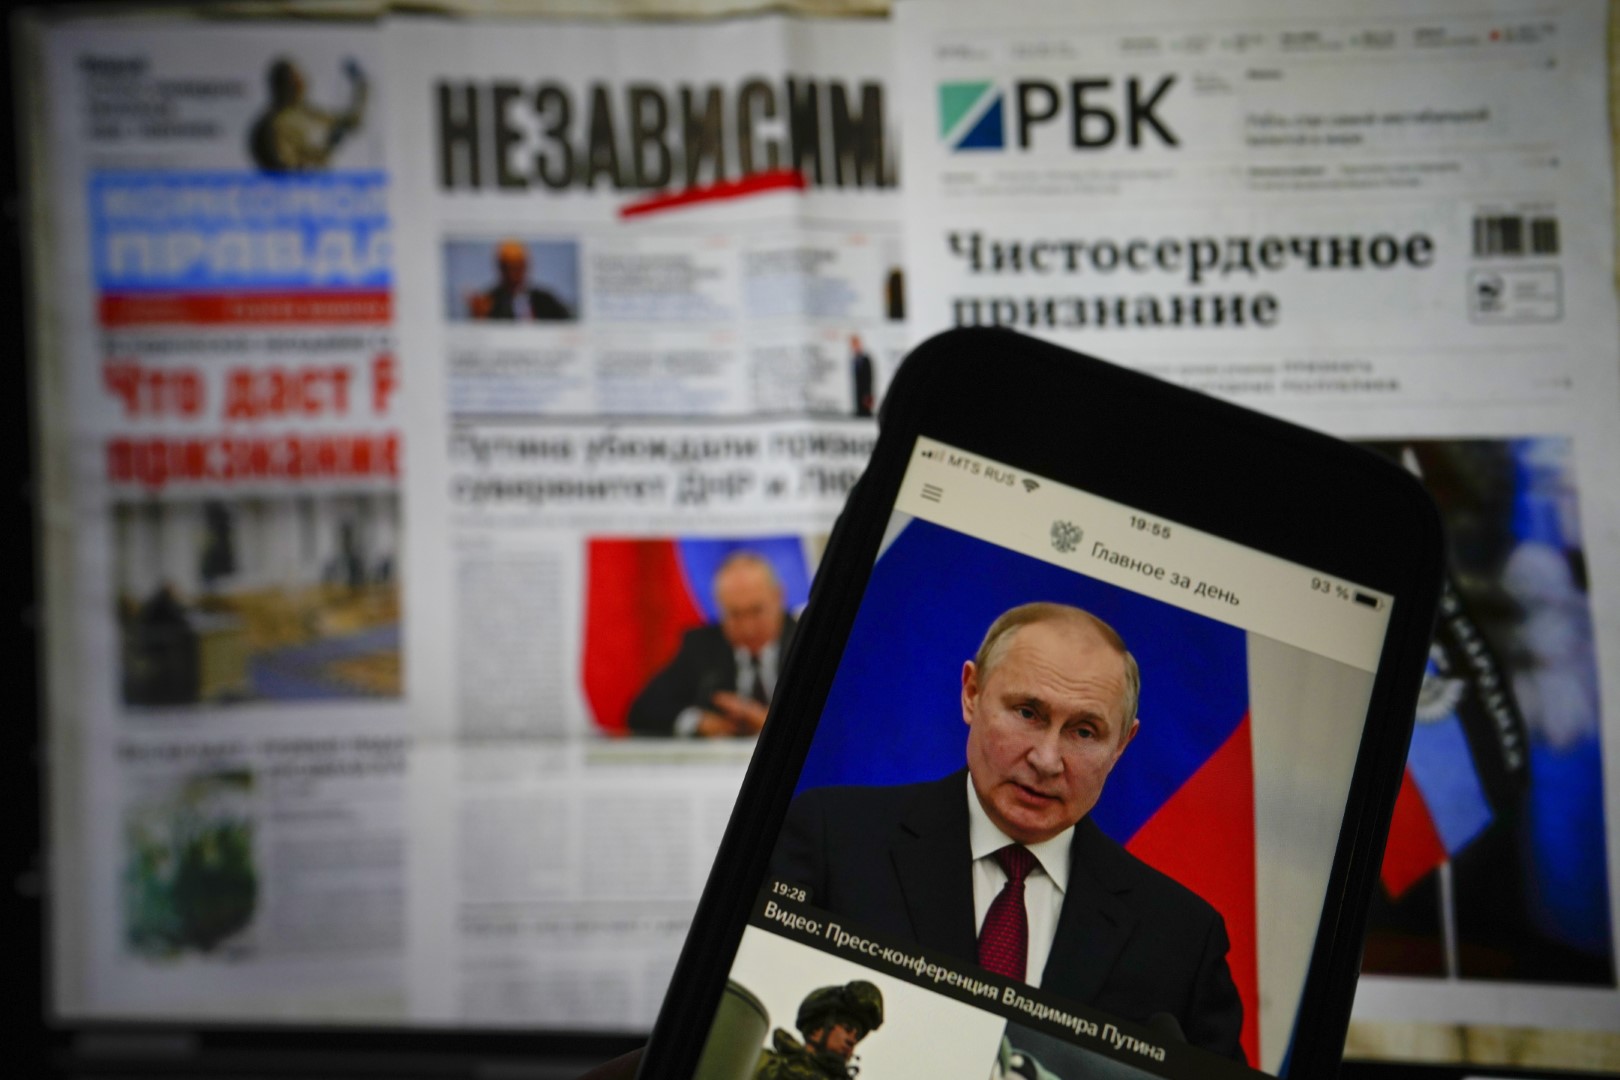 Putinit i pengon edhe raportimi i drejtë, kërcënon me mbyllje dy media ruse të pavarura – ua ndalë transmetimin